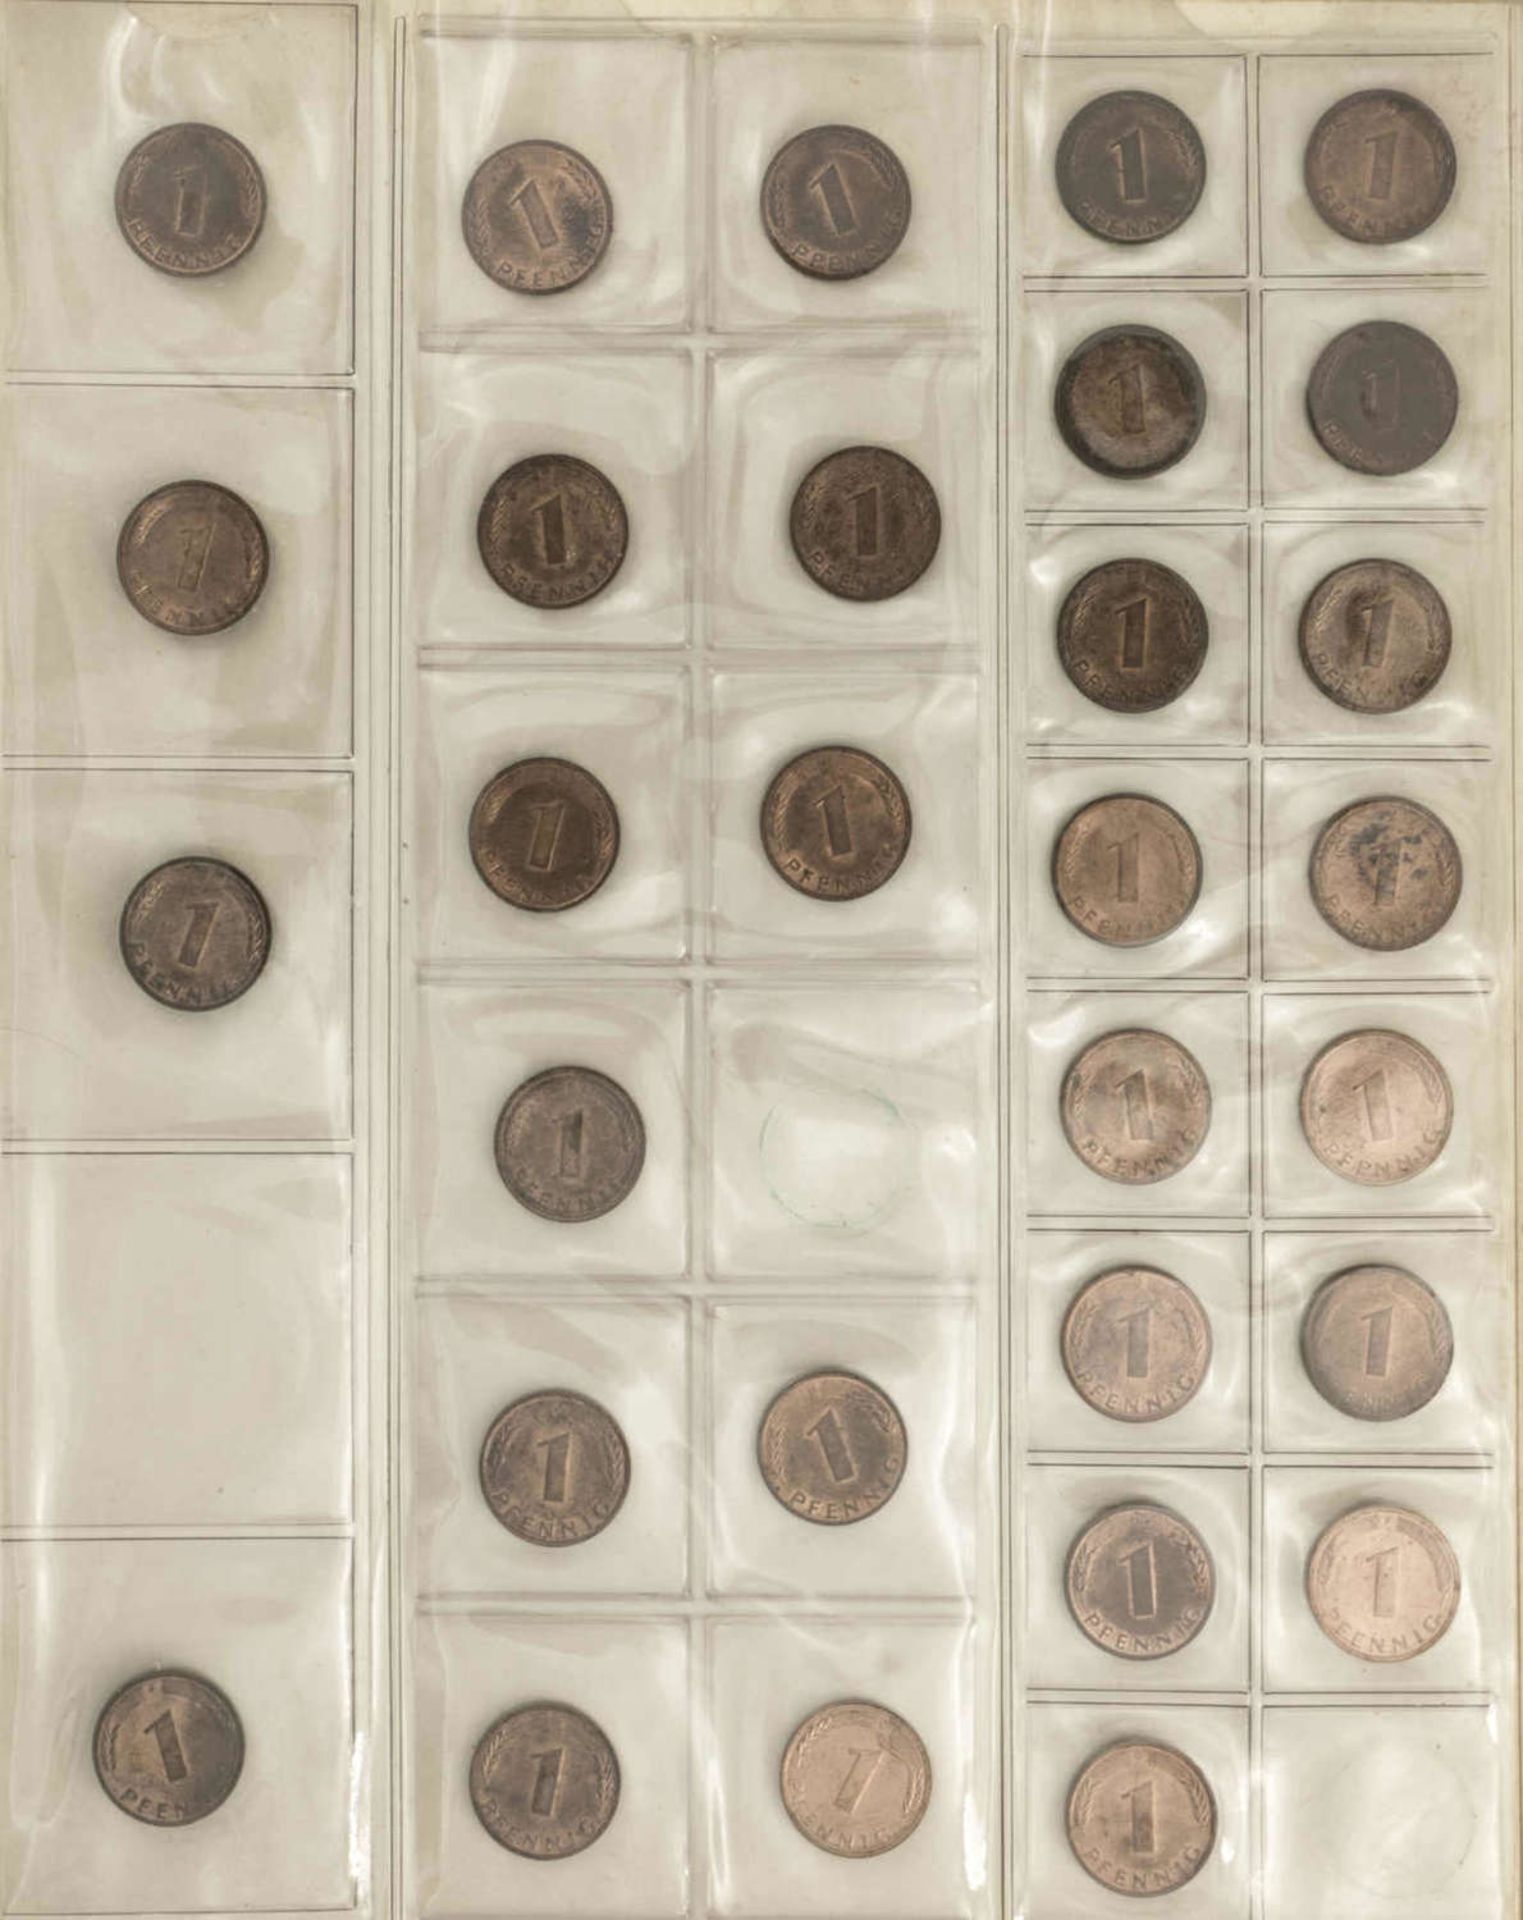 BRD Sammlung 1 Pfennig und 2 Pfennig - Münzen. Dabei: 1 Pfennig: 1948 - 50 DFGJ, 1966 - 85 DFGJ, 1 - Image 6 of 6